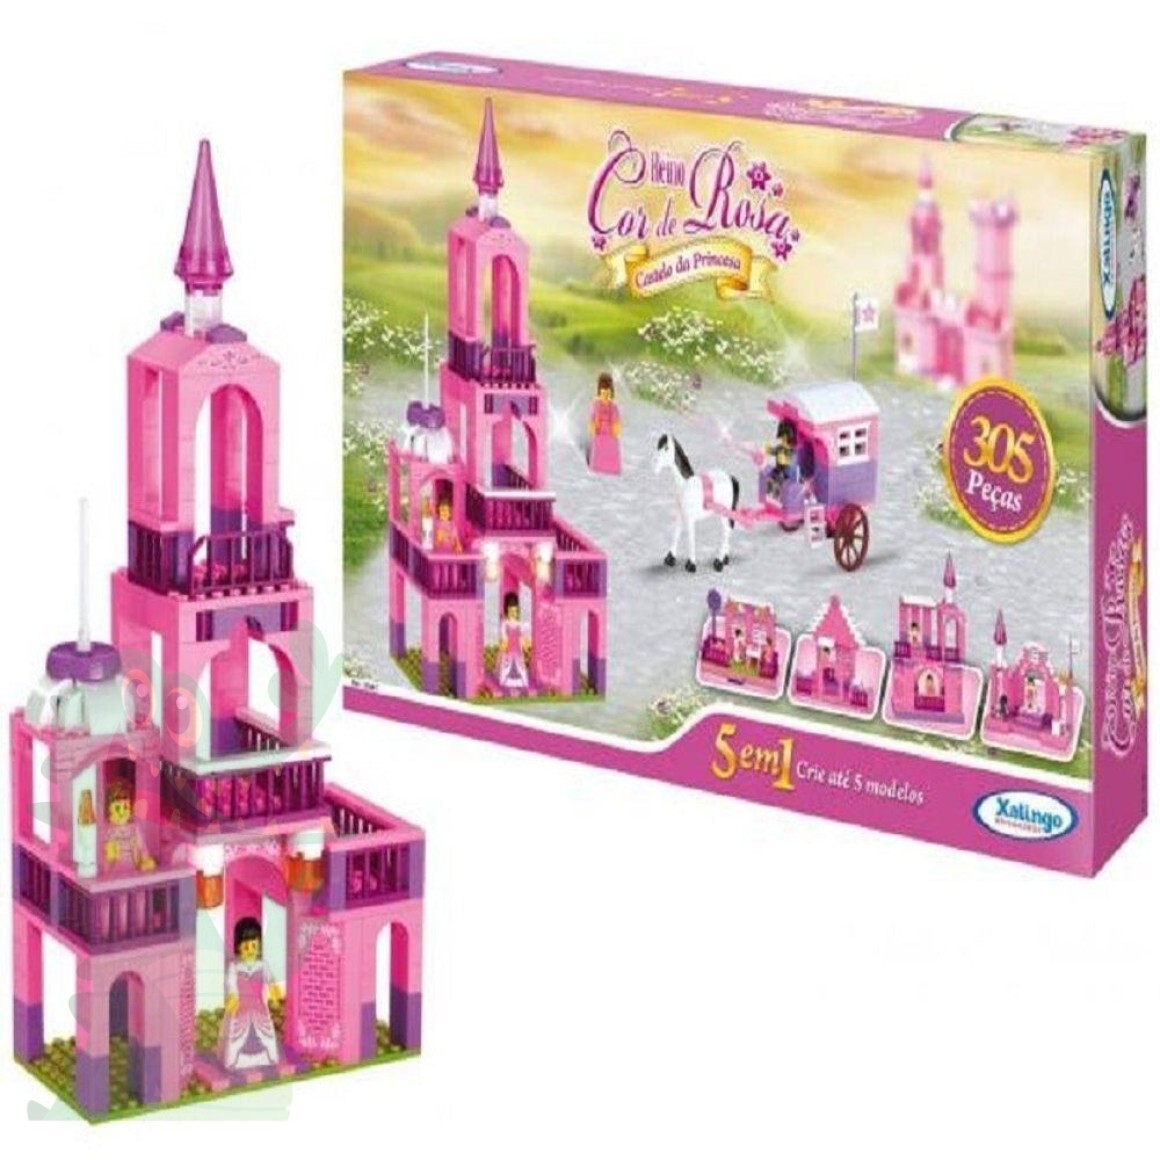 Jogo Princesinhas do Reino Encantado Com Tabuleiro 3D + Dado 19 Peças Na  Caixa